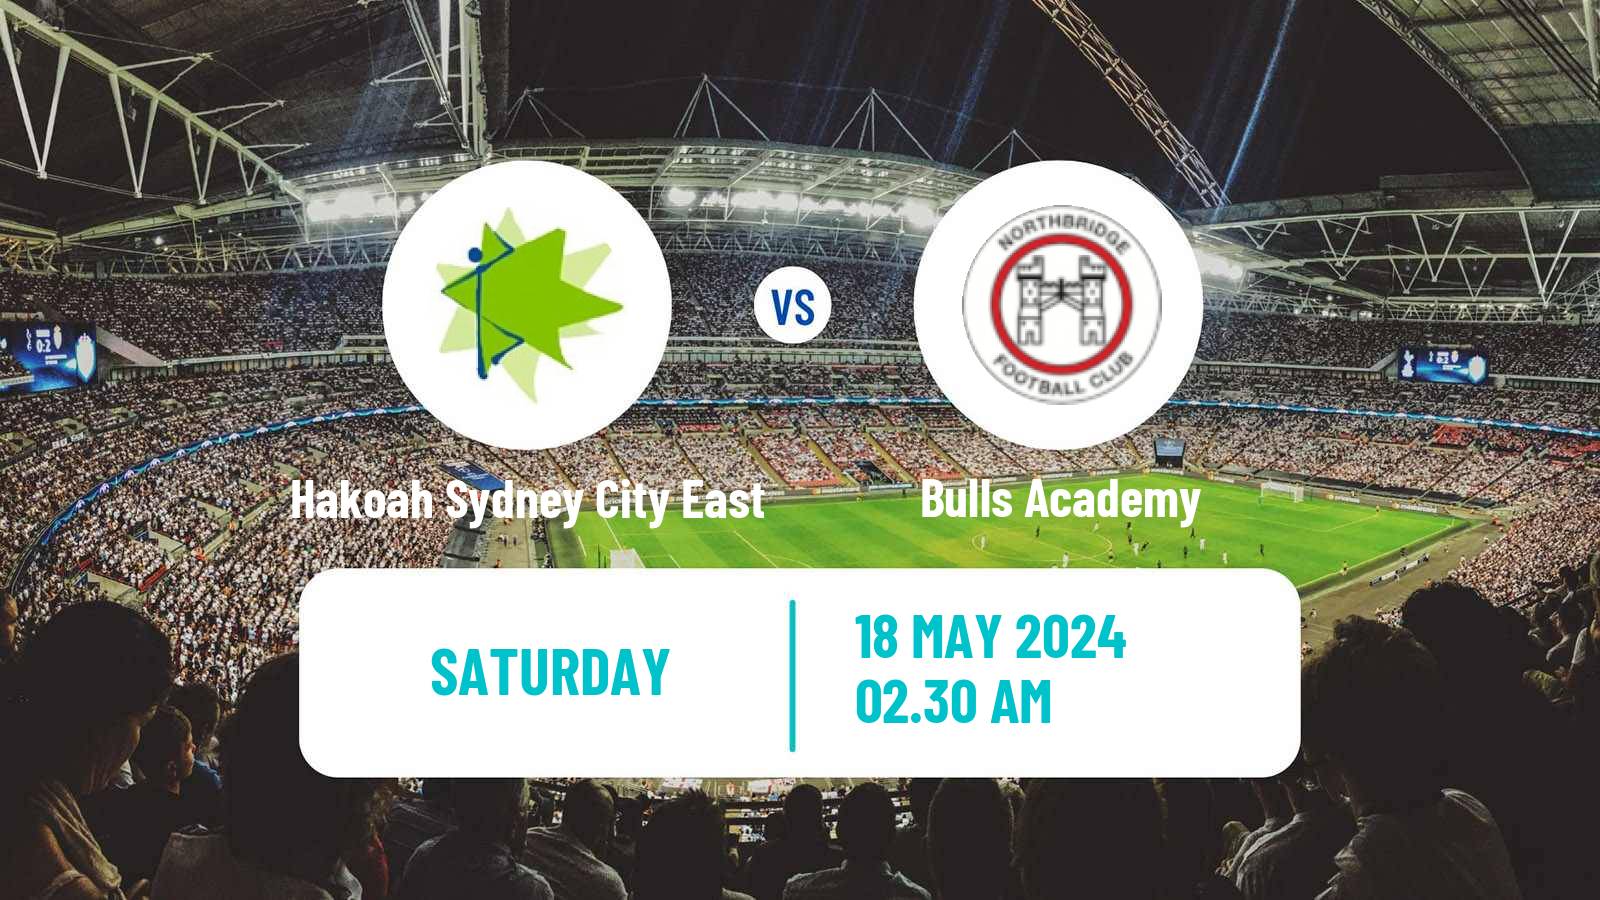 Soccer Australian NSW League One Hakoah Sydney City East - Bulls Academy